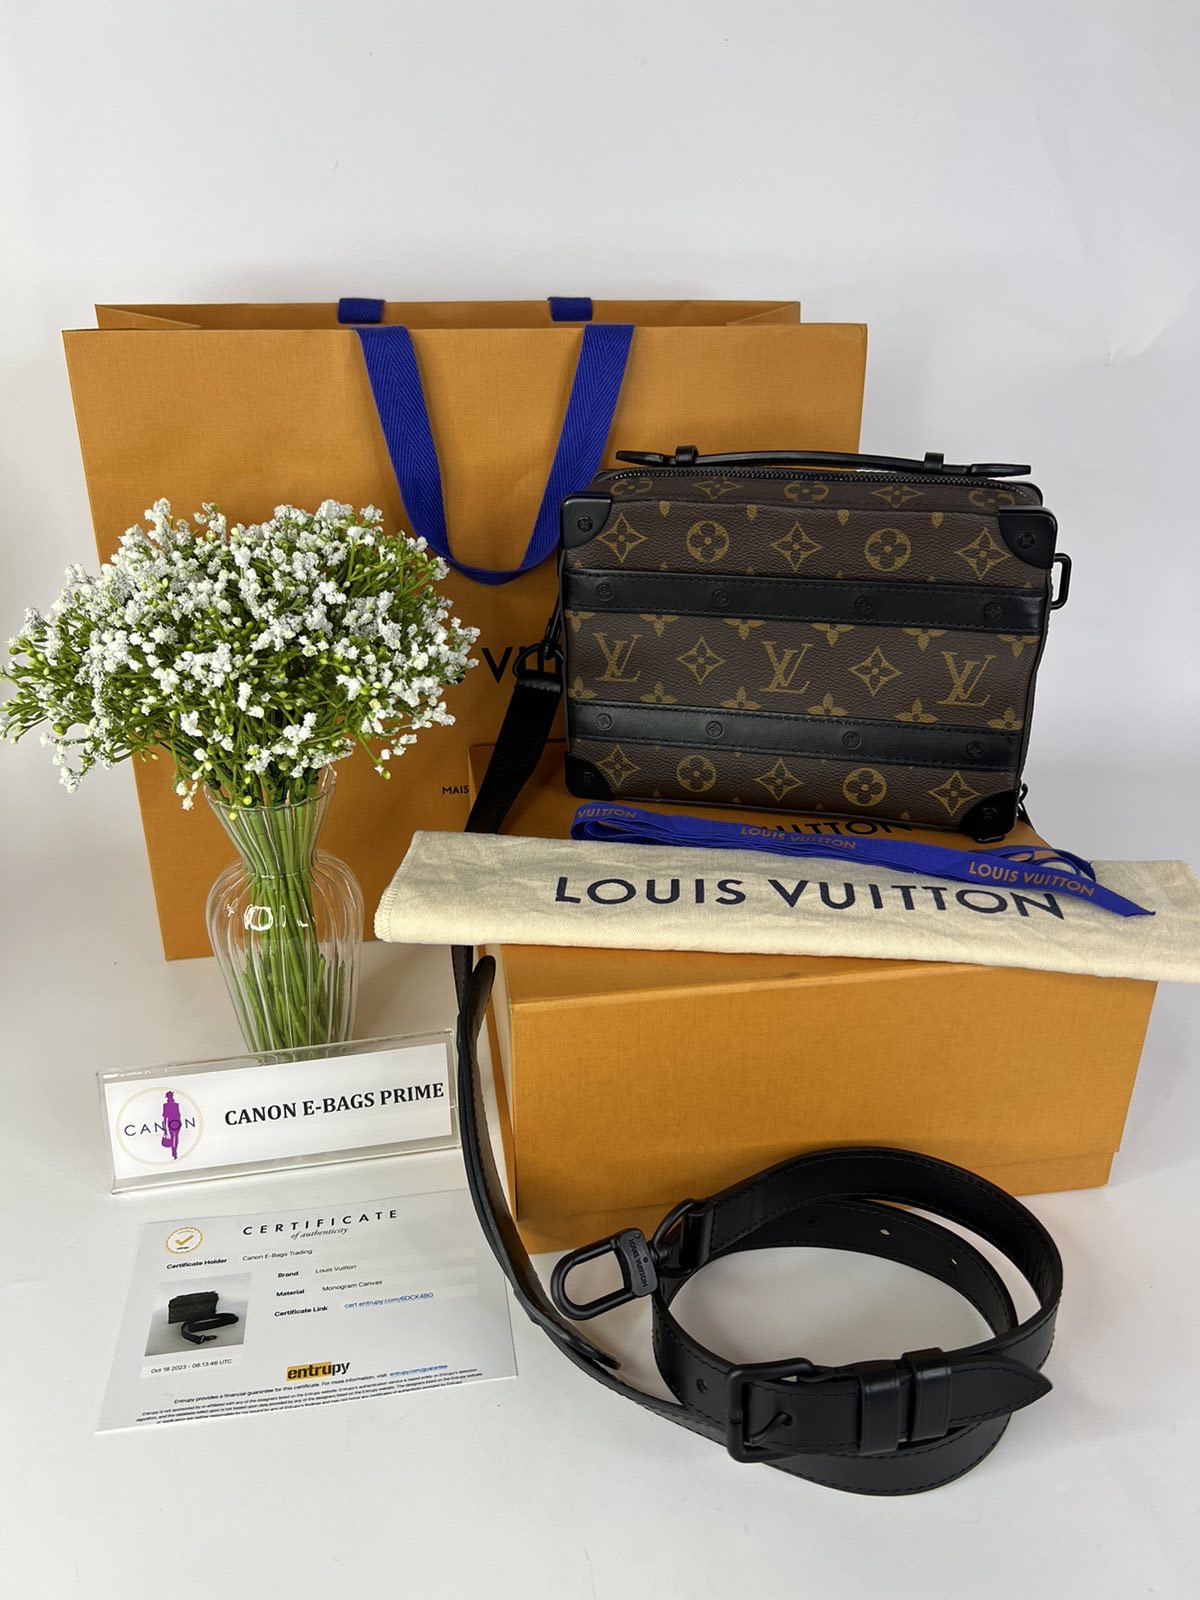 Louis Vuitton Stripe Accent Monogram T-Shirt. Size S - Canon E-Bags Prime